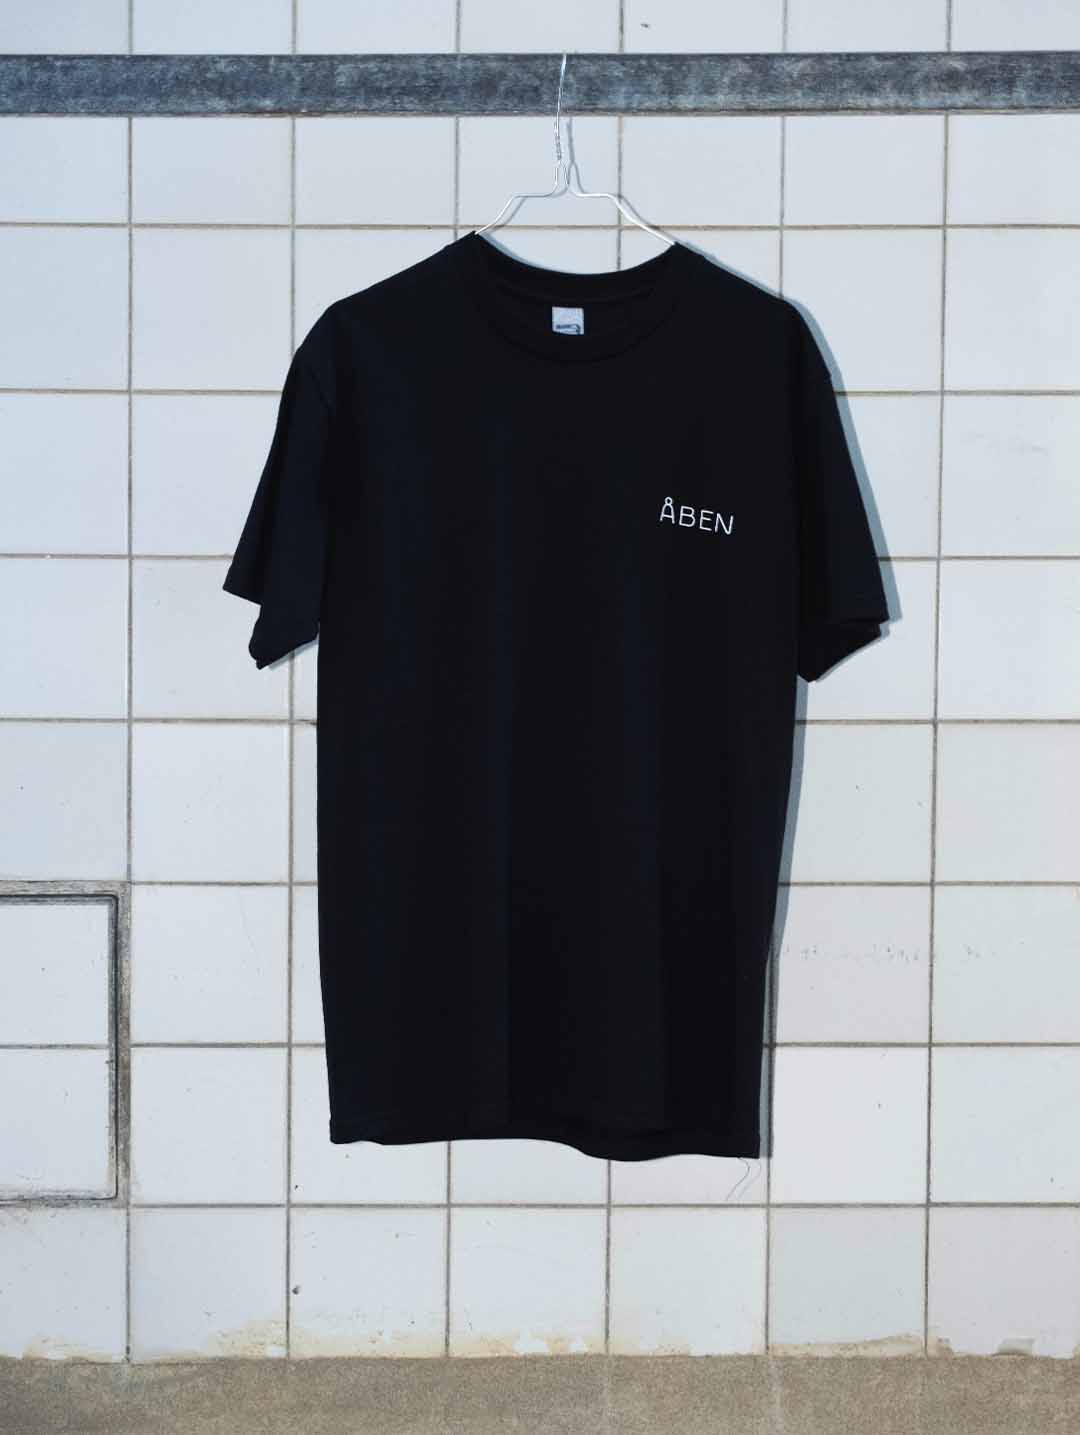 ÅBEN T-shirt / Black